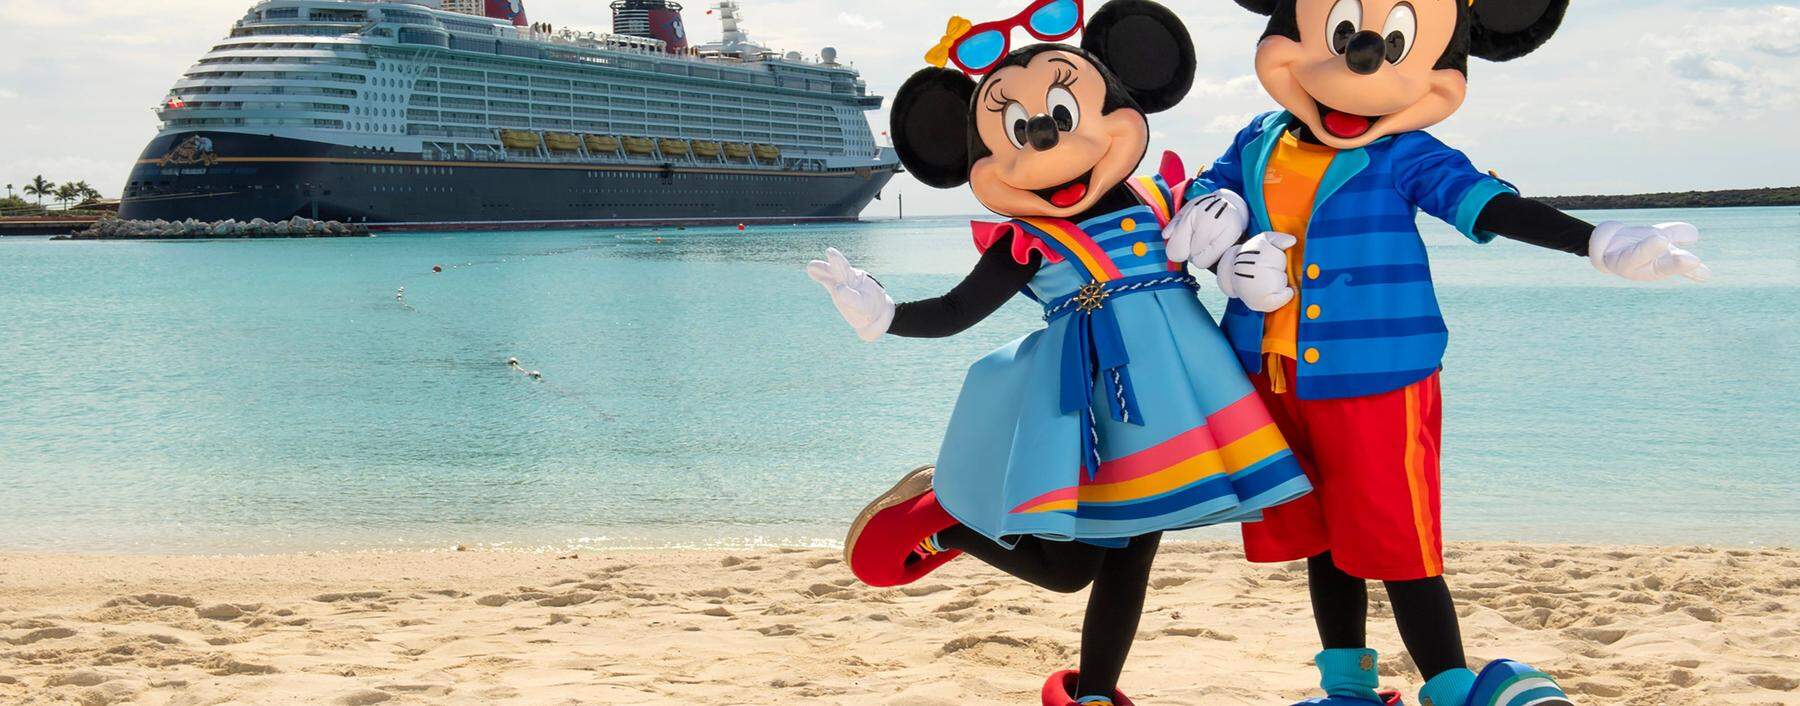 Die Disney Cruise Line ist, naheliegend, ganz auf die Inhalte von Disney abgestellt. 